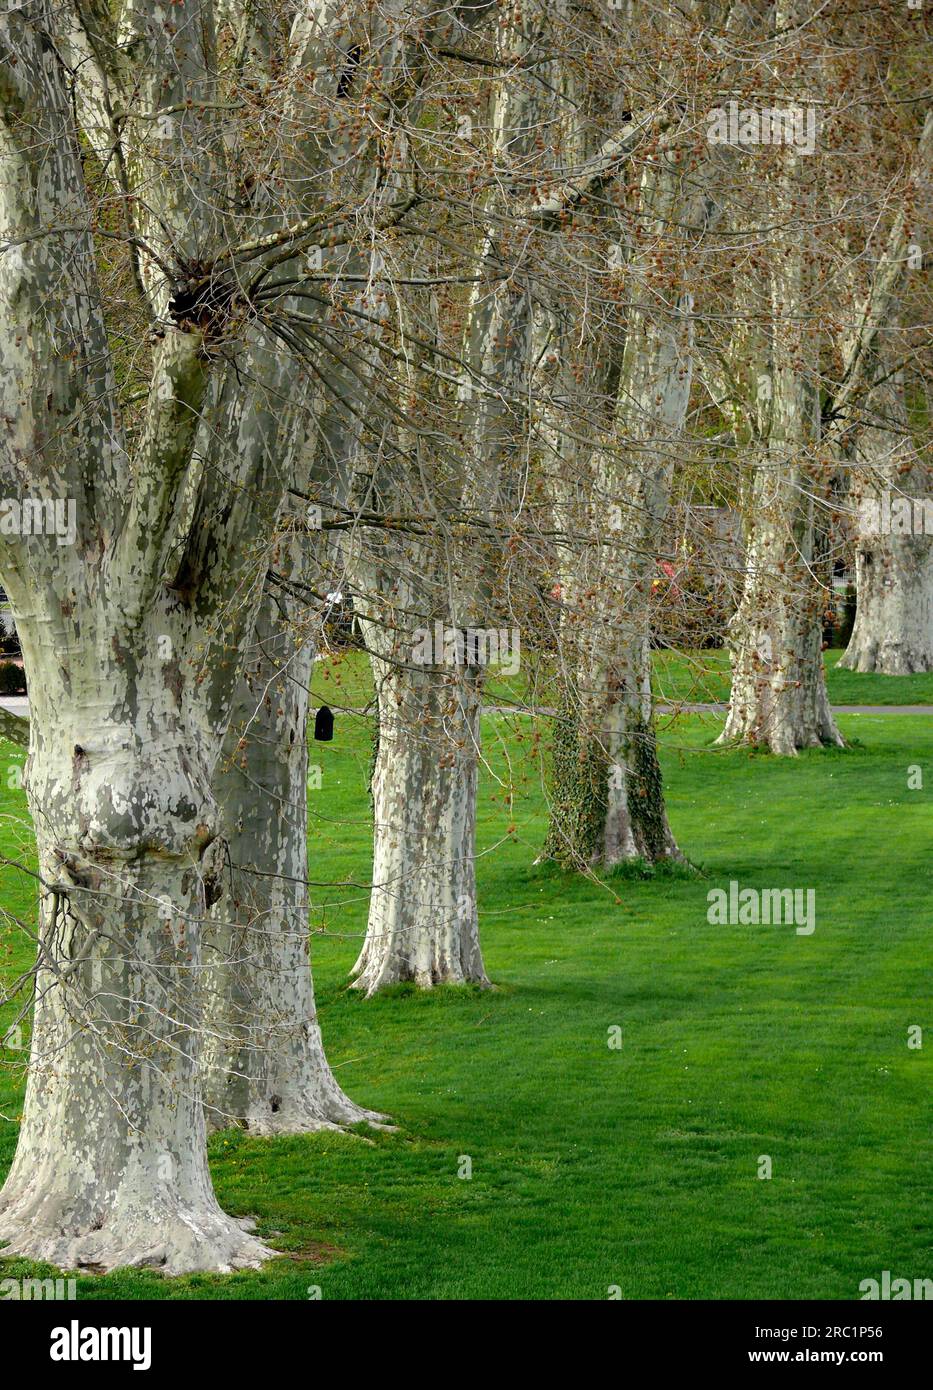 Avenue of plane trees Stock Photo